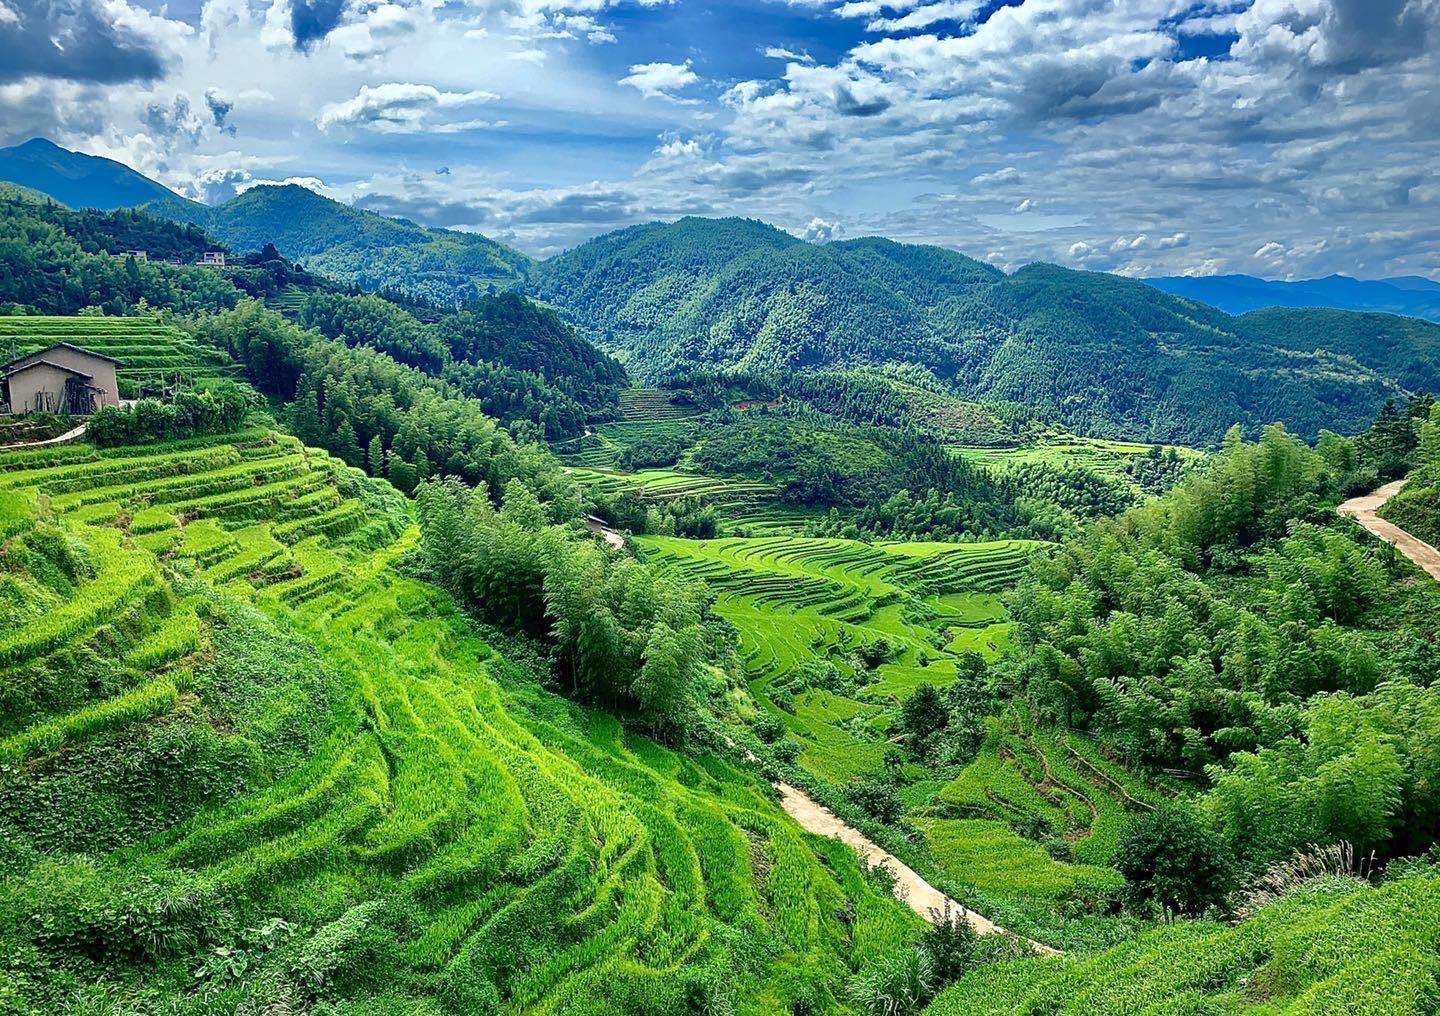 中国到底哪里的梯田最好看？[29P]|无奇不有 - 武当休闲山庄 - 稳定,和谐,人性化的中文社区